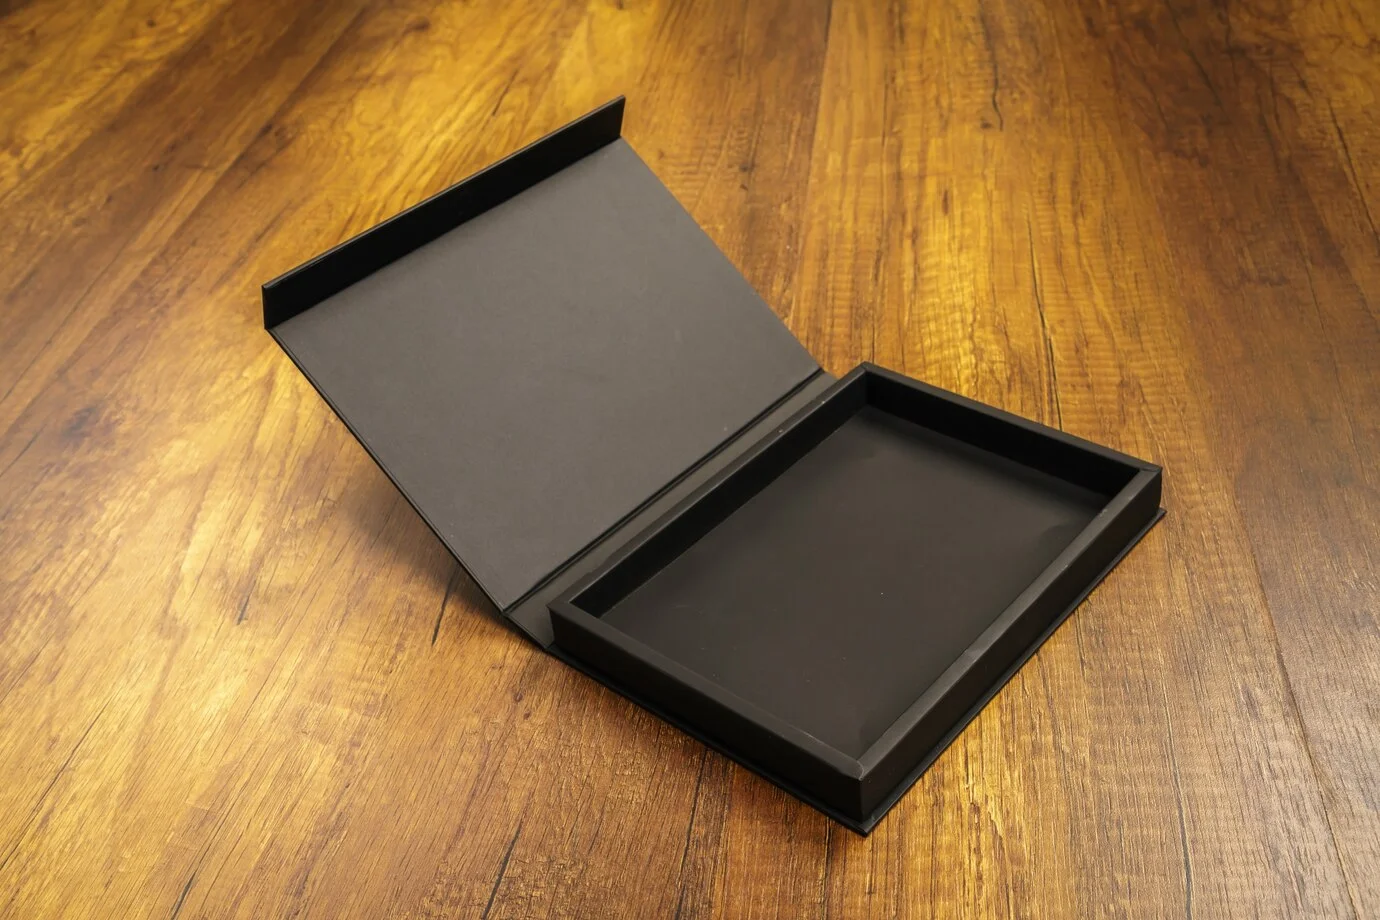 small black rigid boxes wholesale